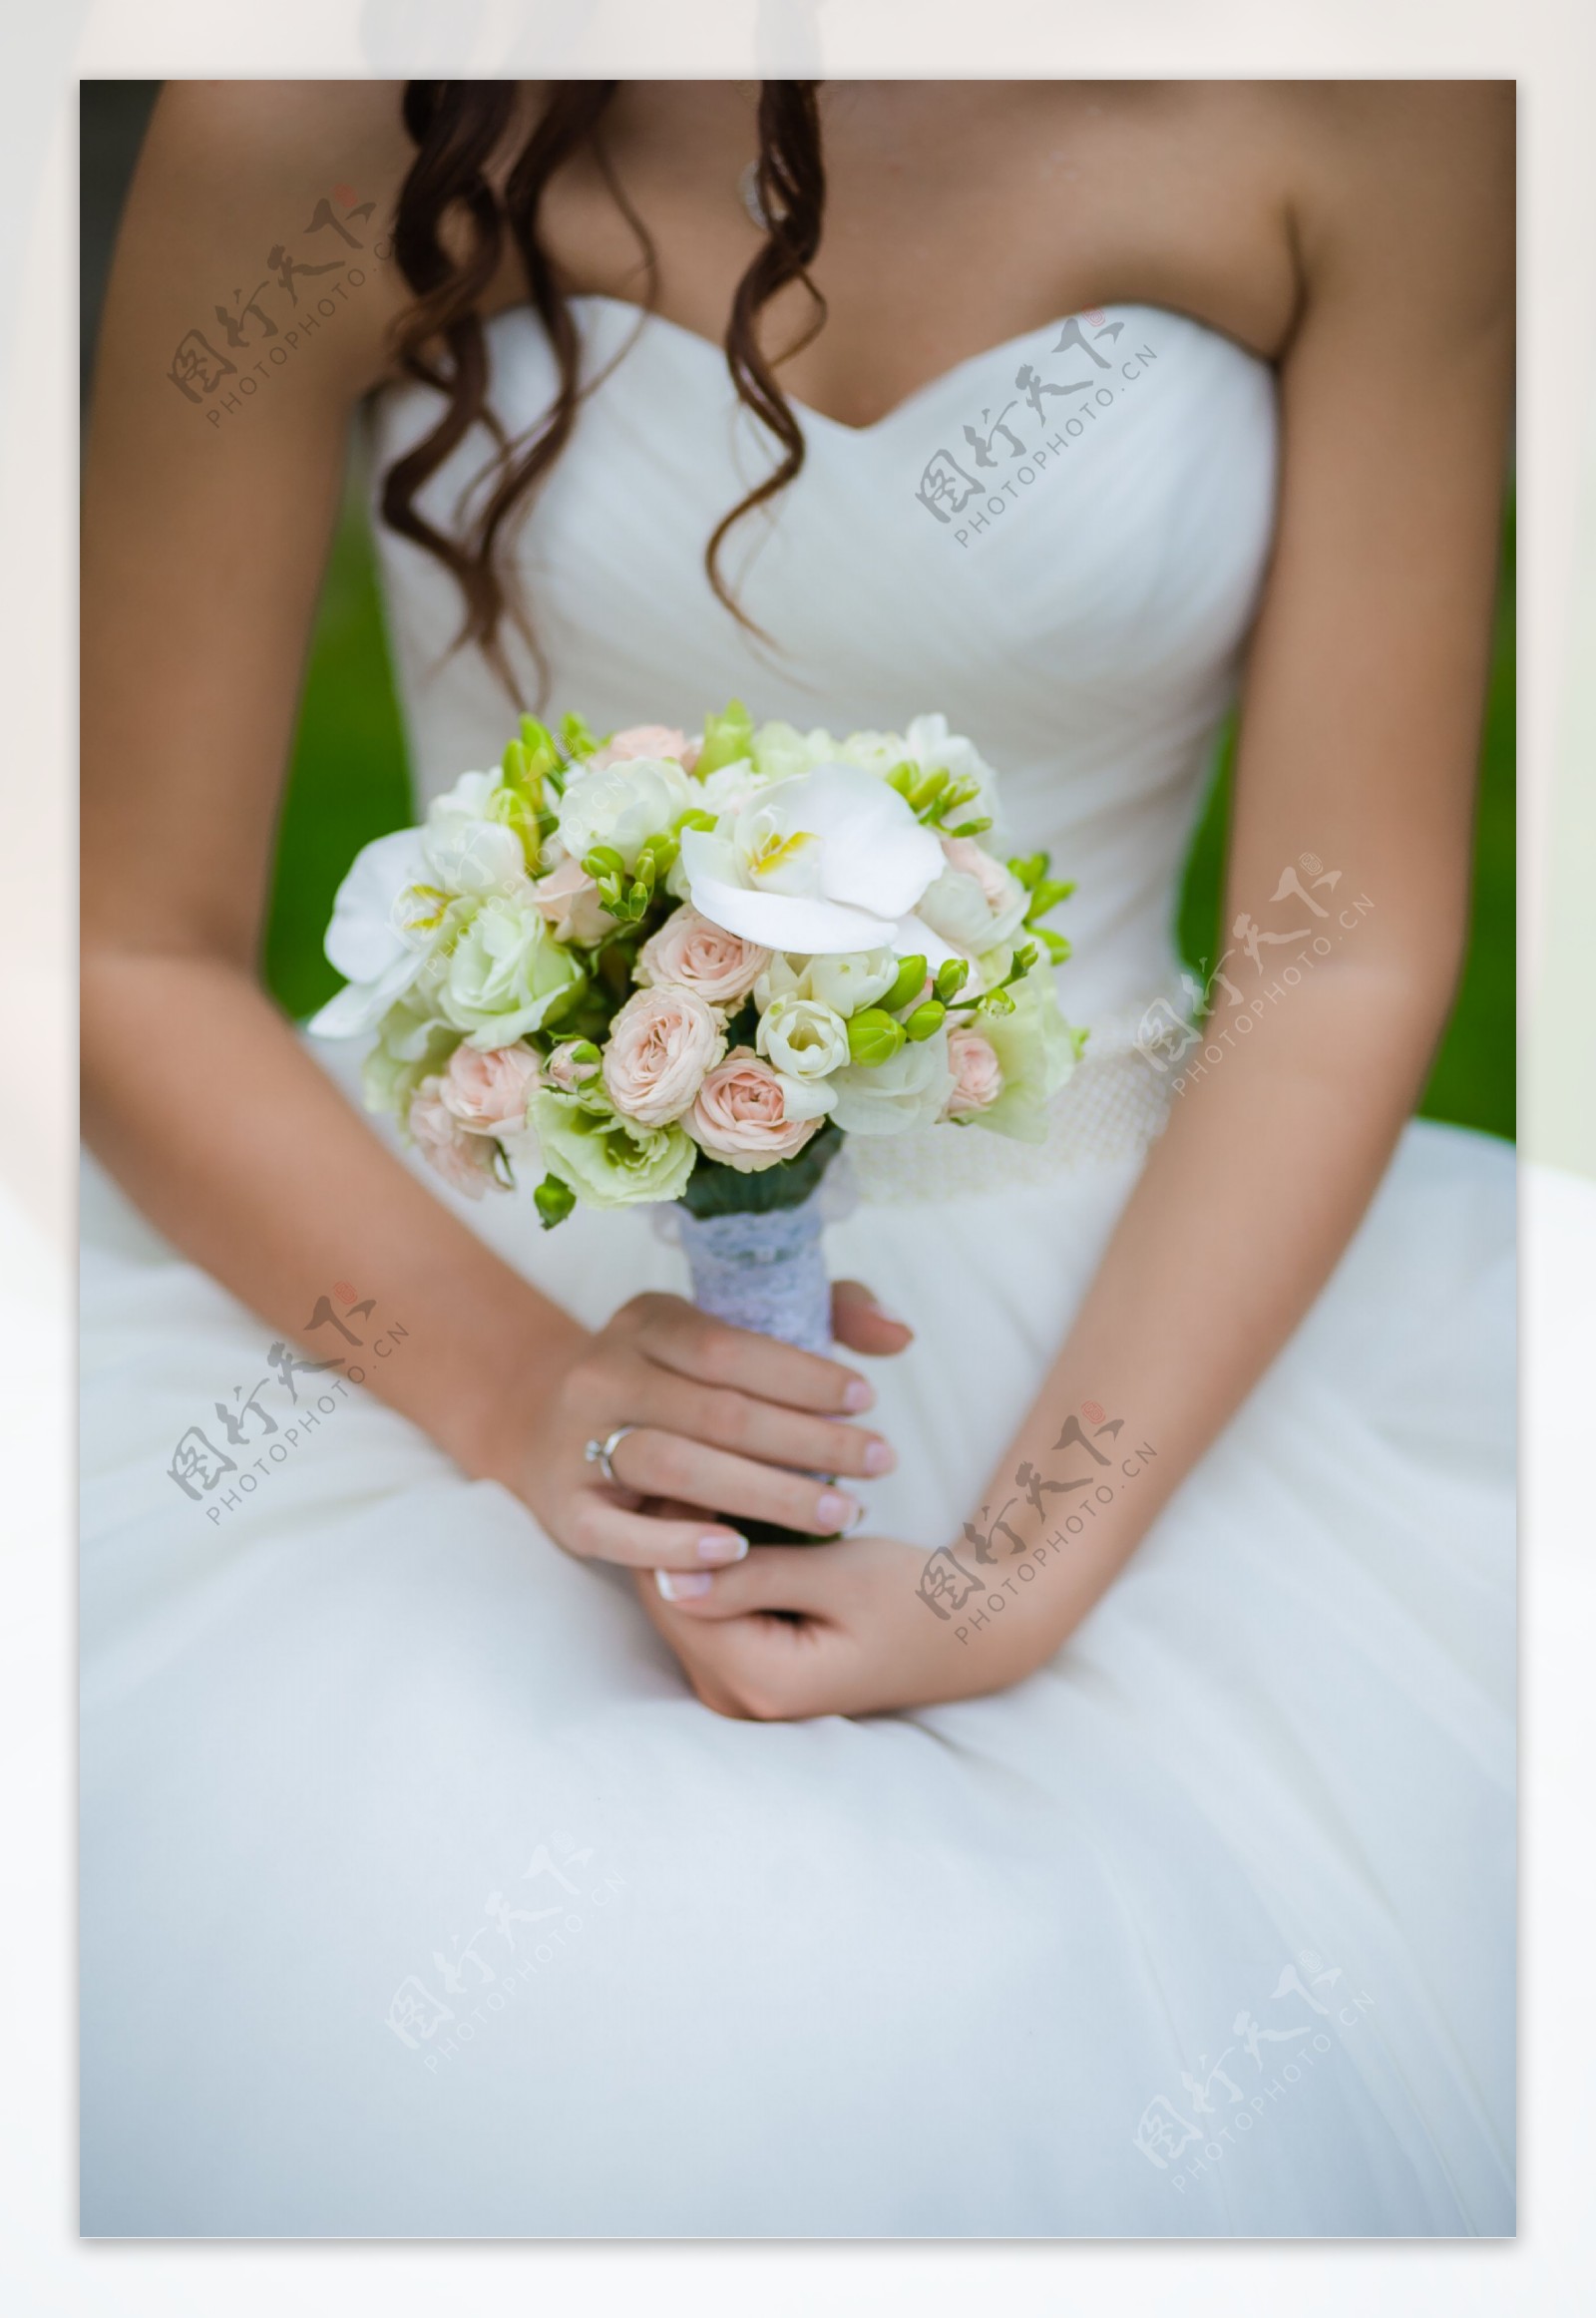 拿着玫瑰花束的新娘图片